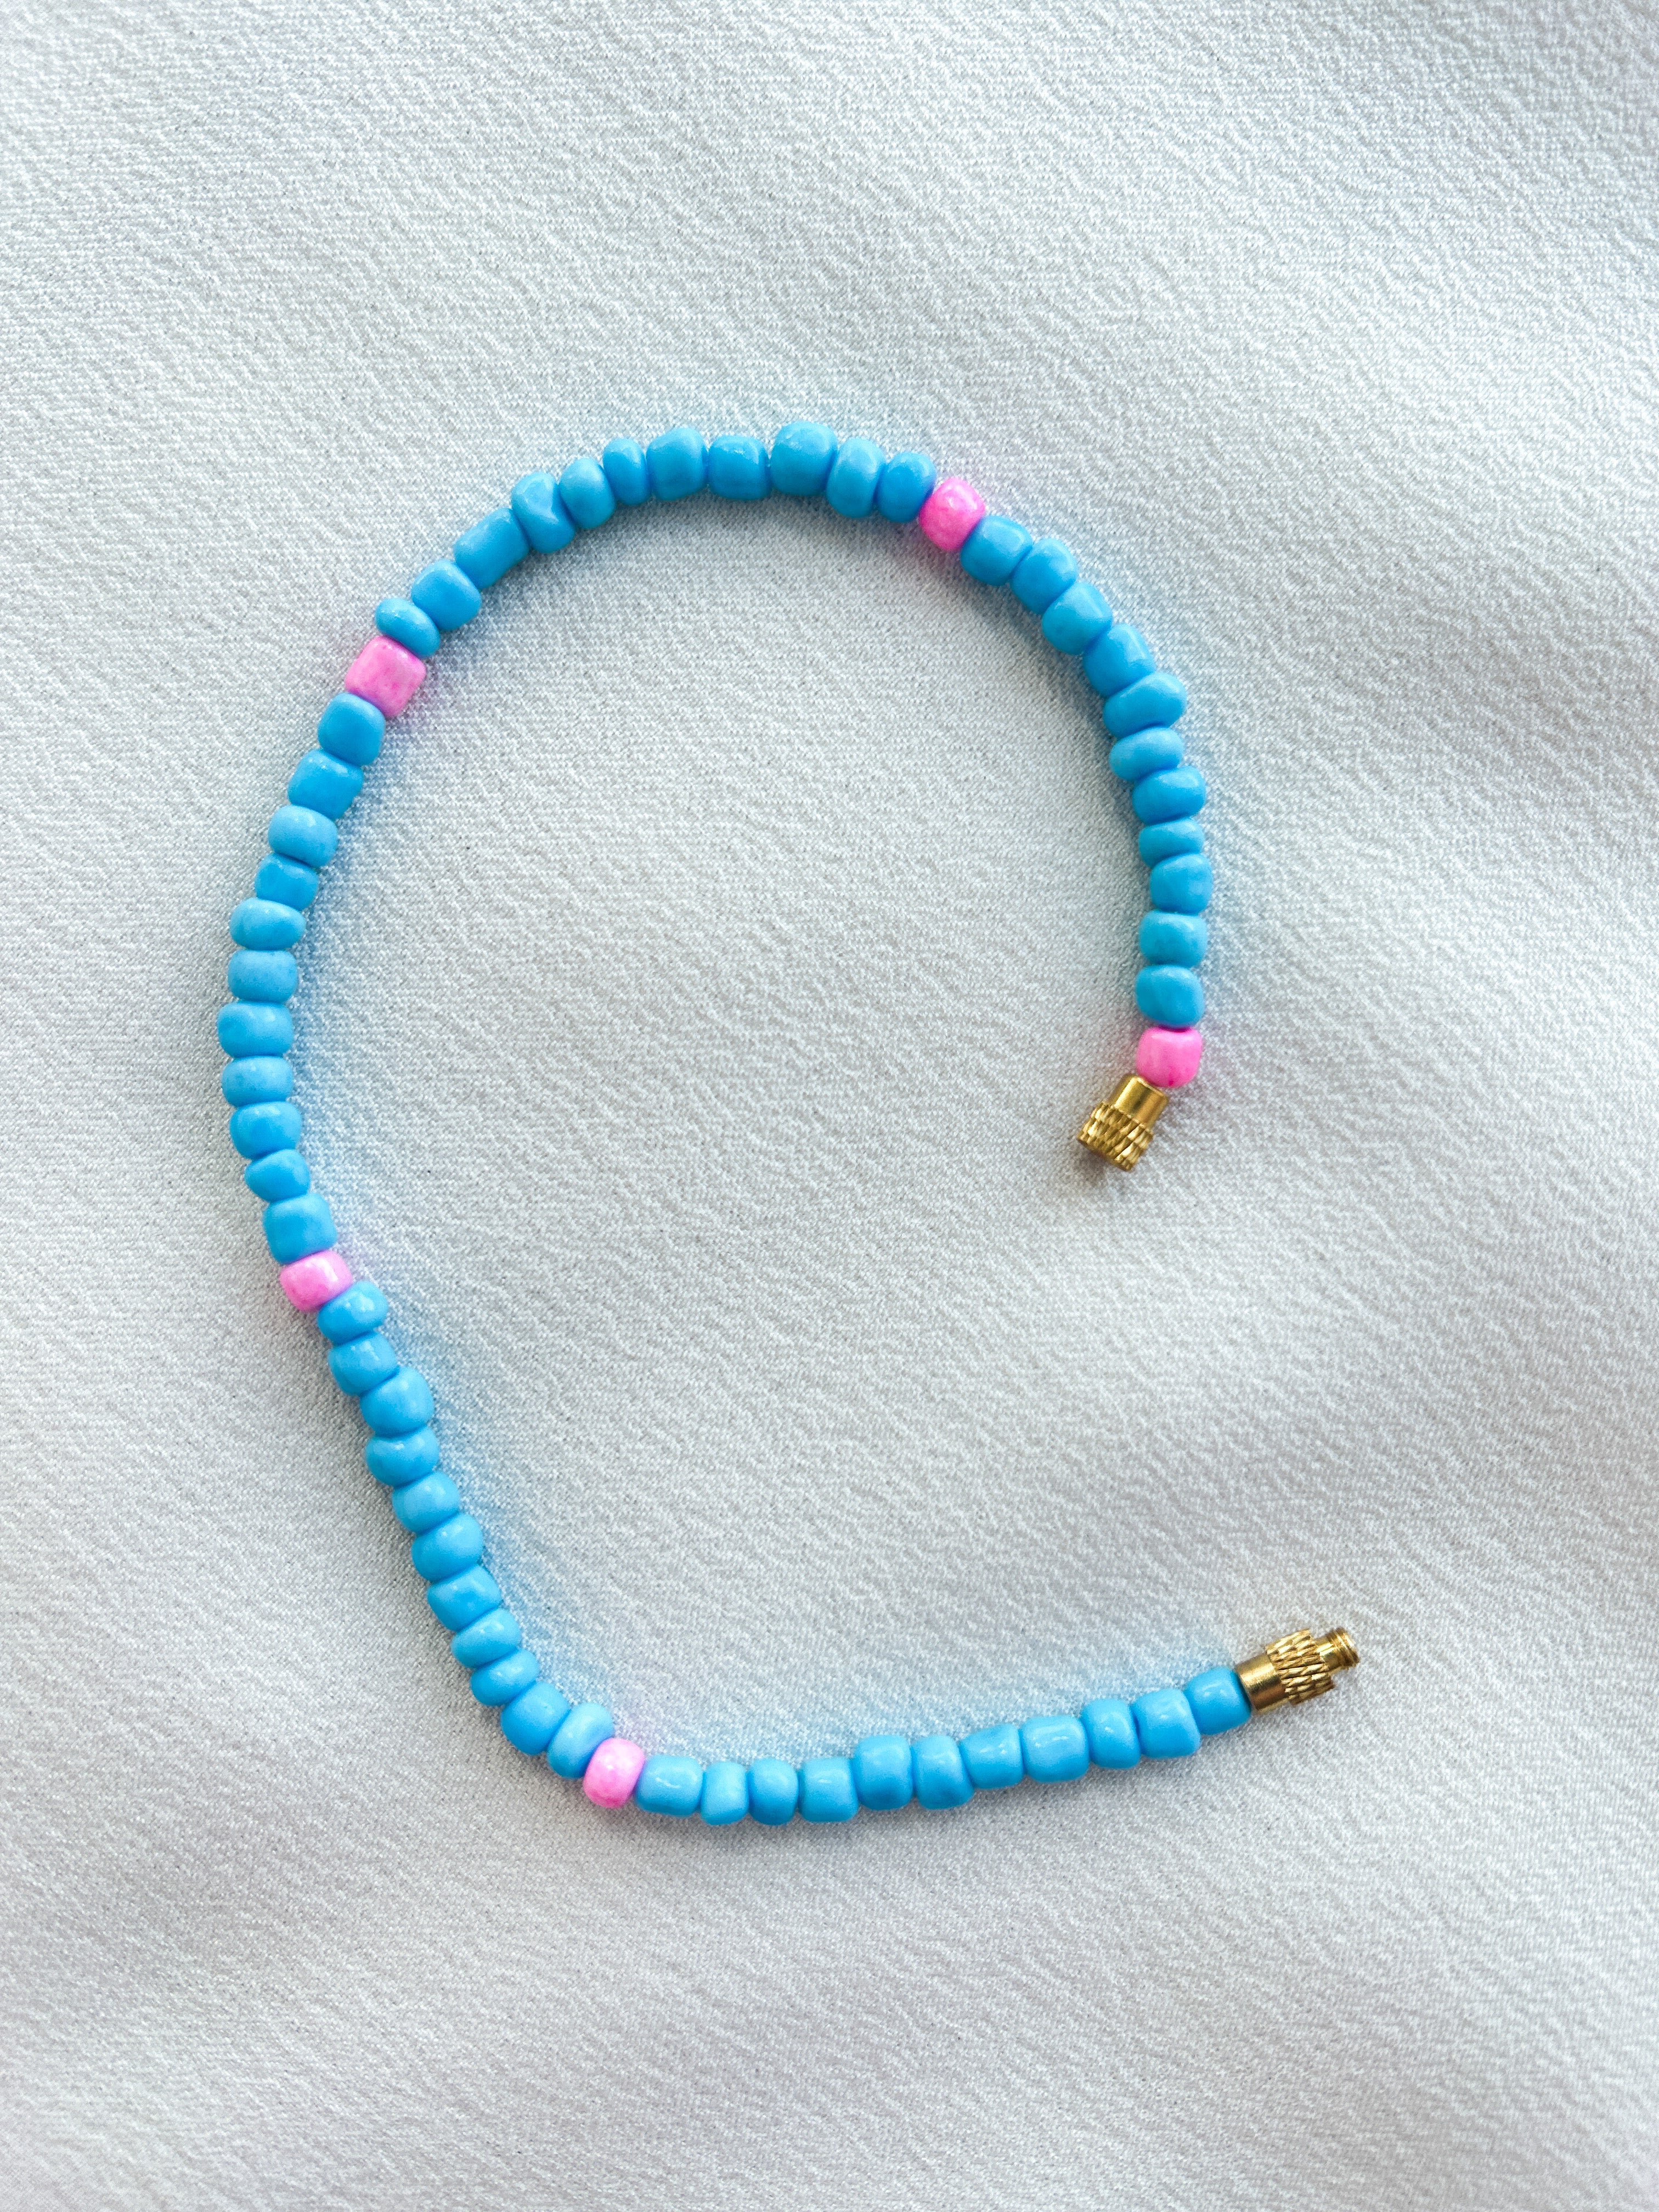 [THE ELEVEN] Anklet/Bracelet: Blue/Pink [Large Beads]